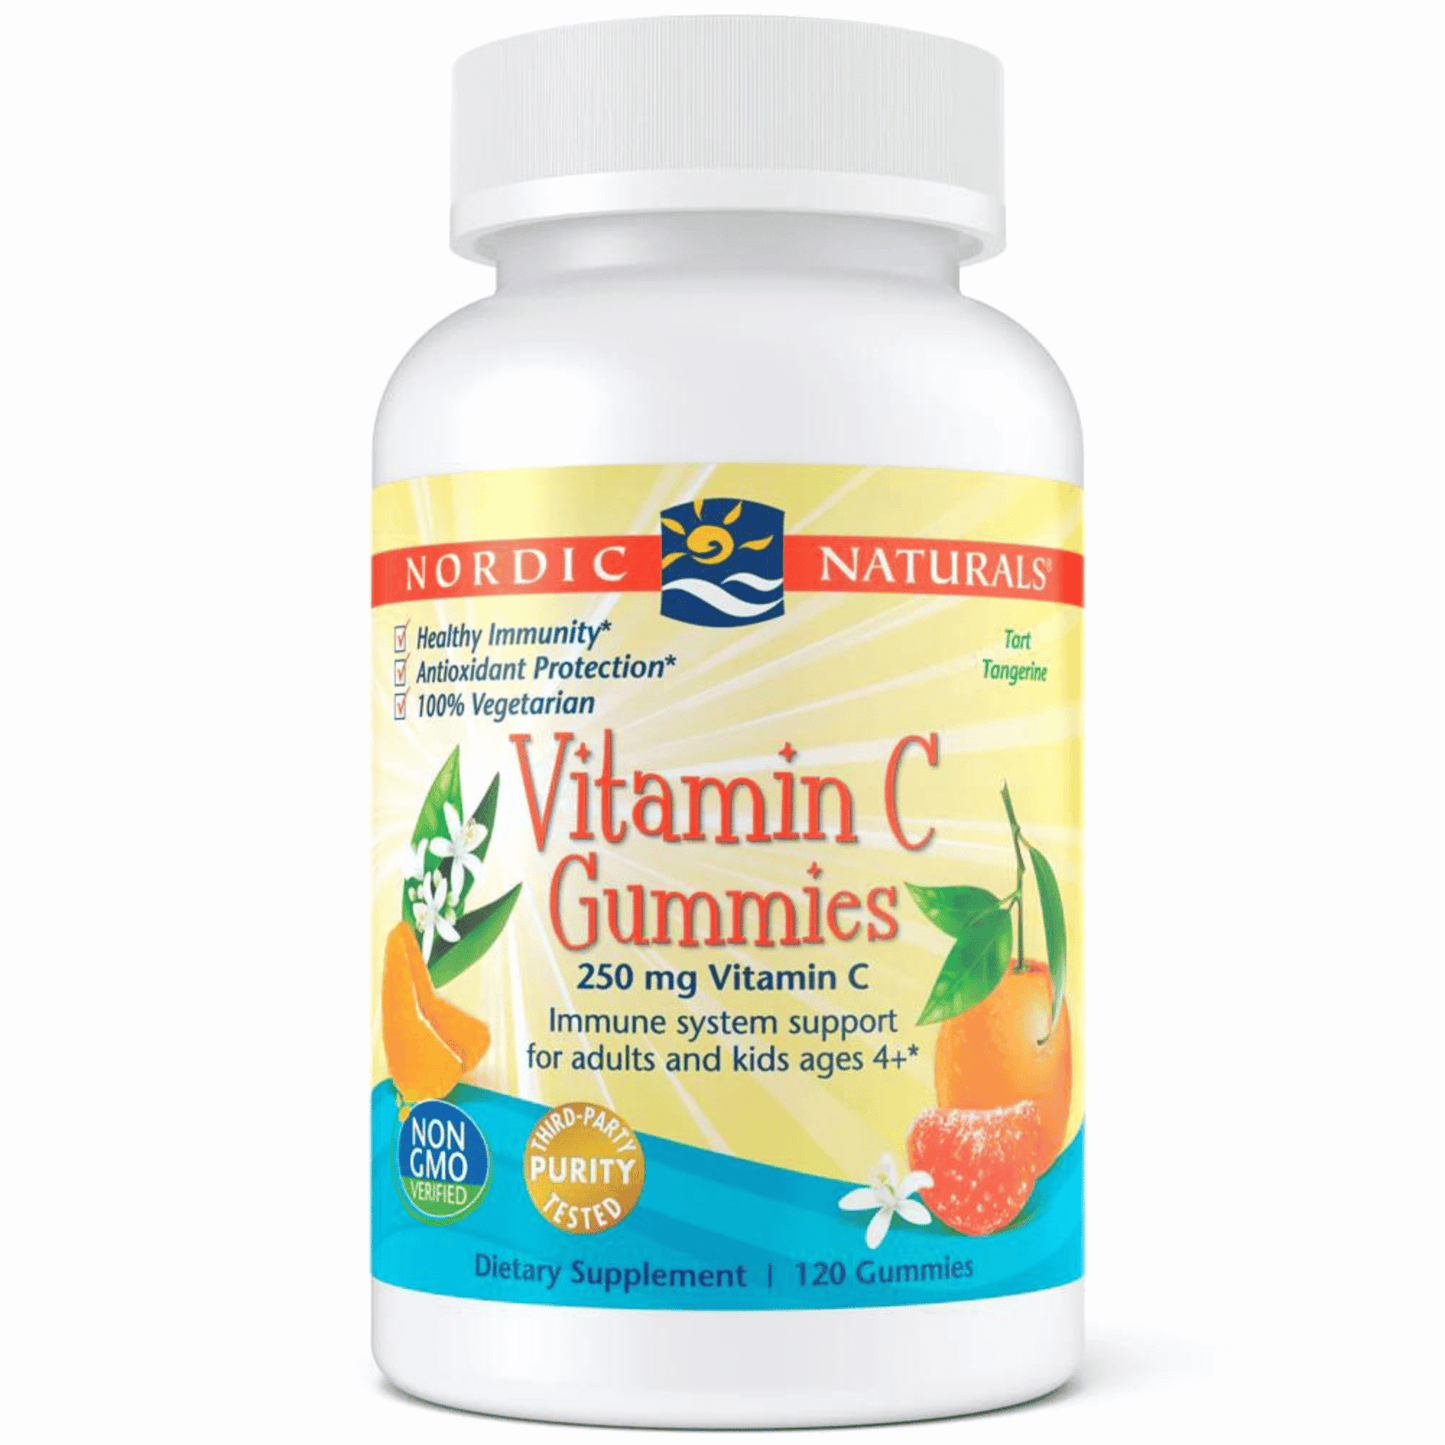 Primary Image of Vitamin-C Gummies